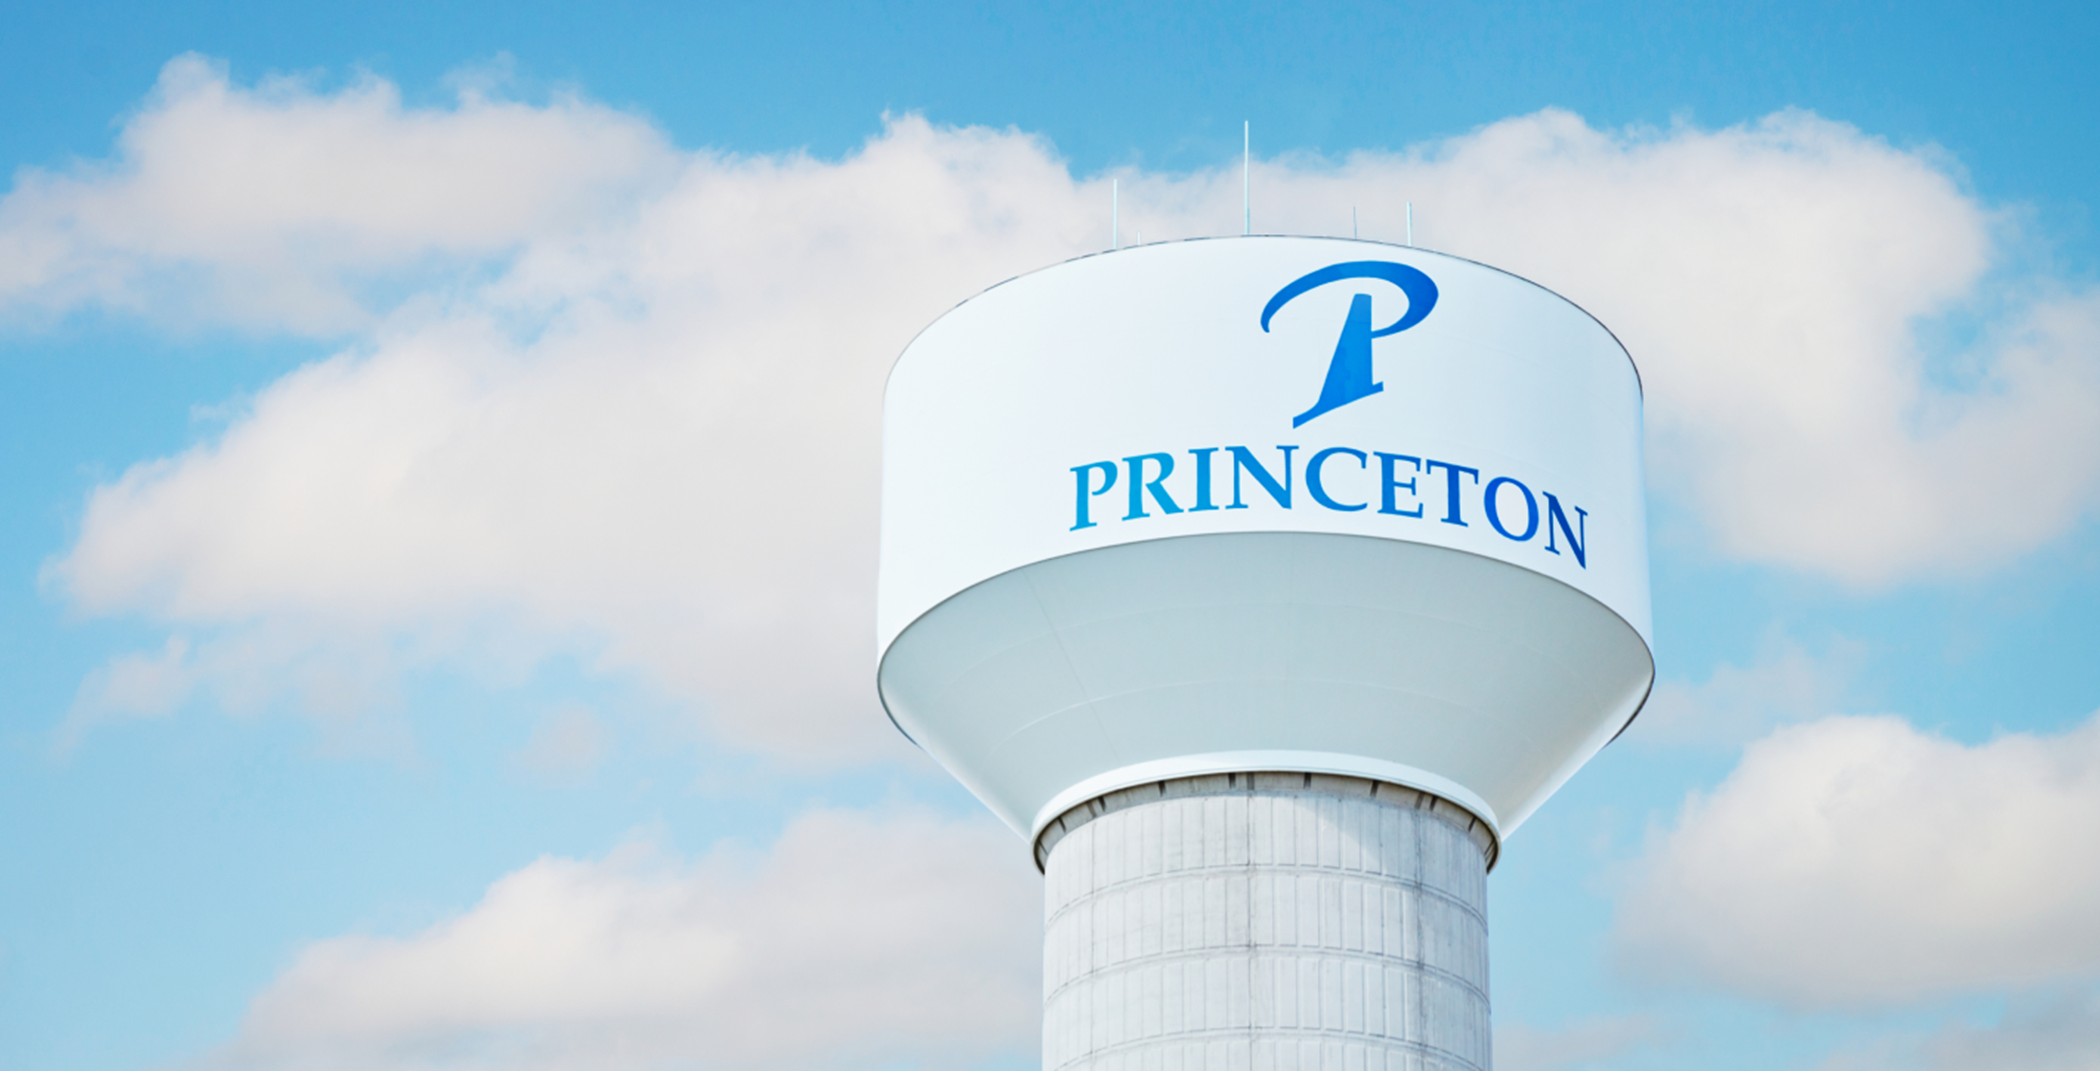 Princeton watertower